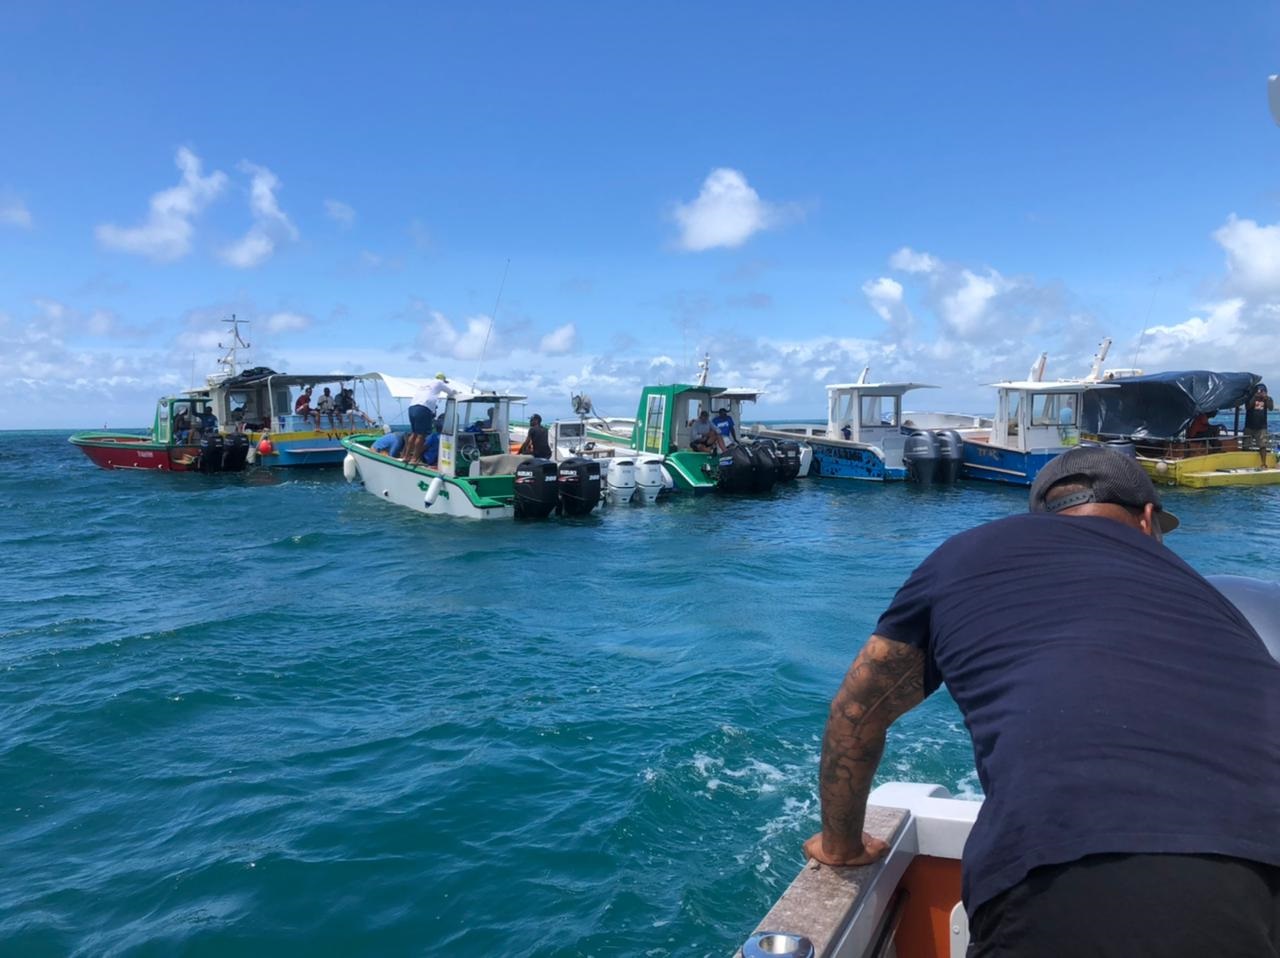     Mobilisation des marins pêcheurs dans le chenal 

